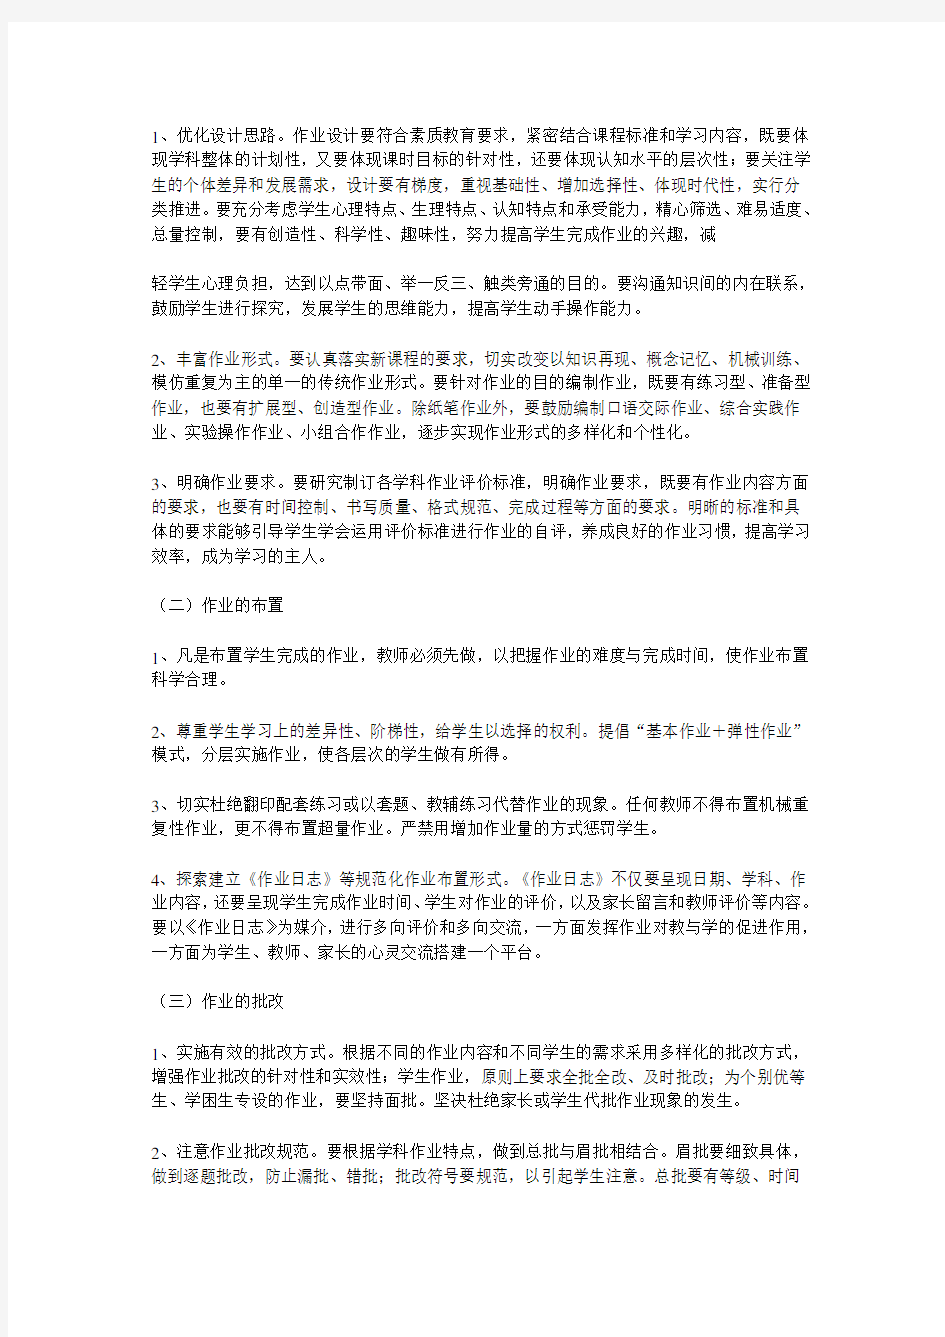 郑州市教育局关于加强中小学作业建设的指导意见